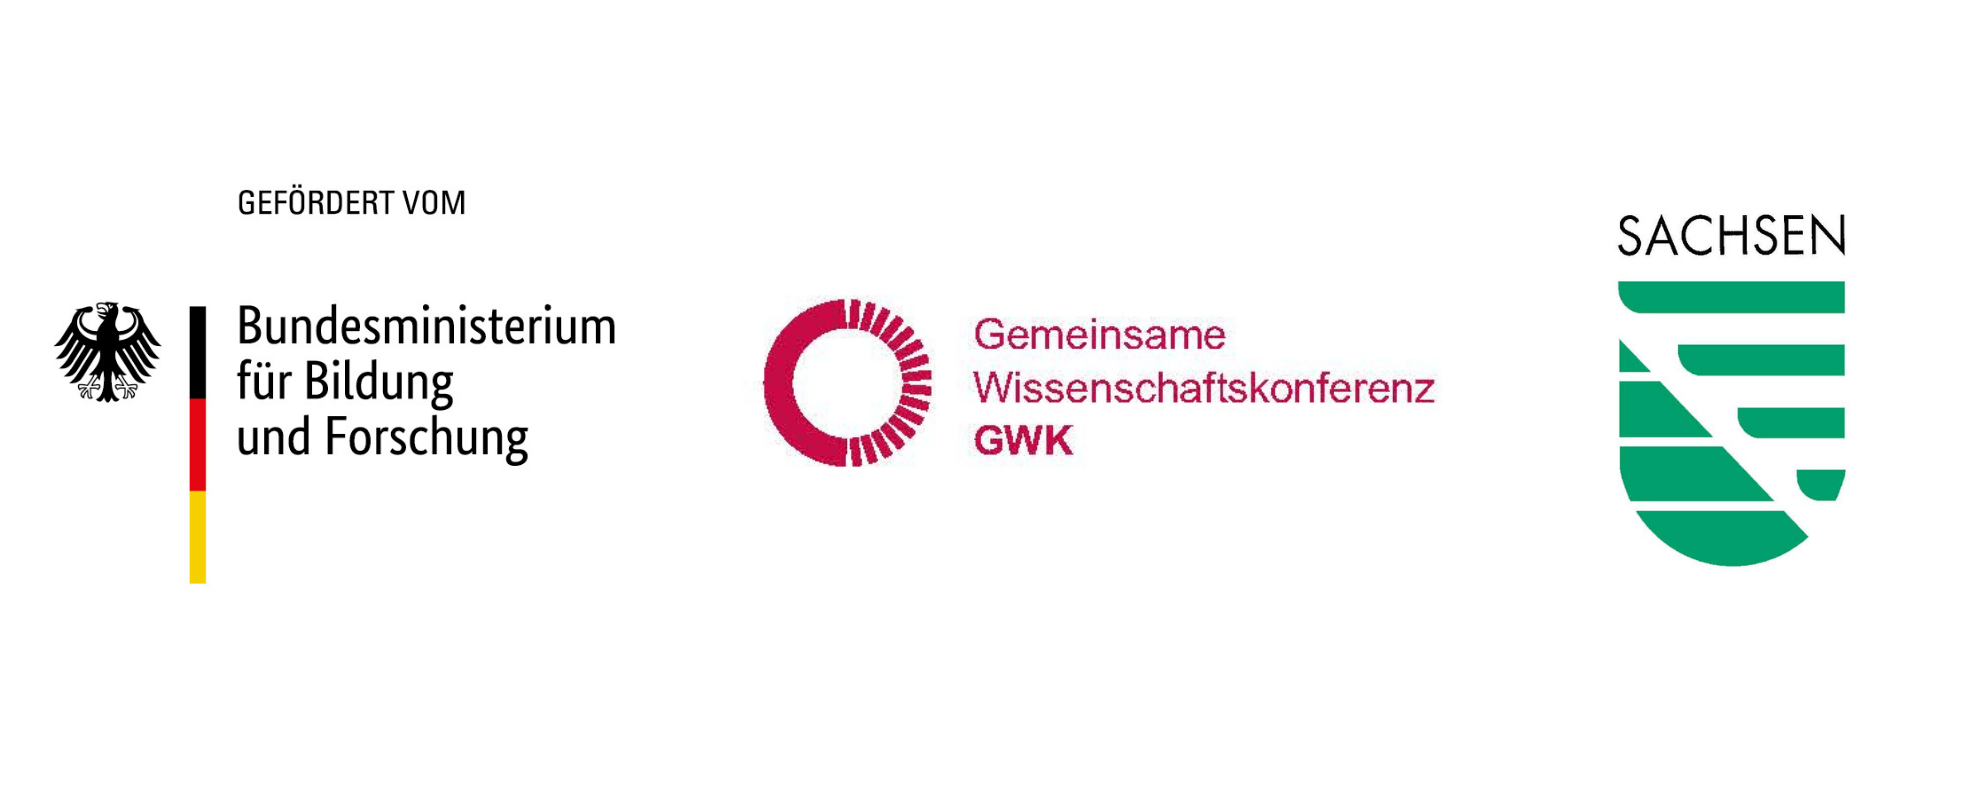 Logos des Bundesministeriums für Bildung und Forschung, der gemeinsamen Wissenschaftskonferenz (GWK) und des Freistaates Sachsen